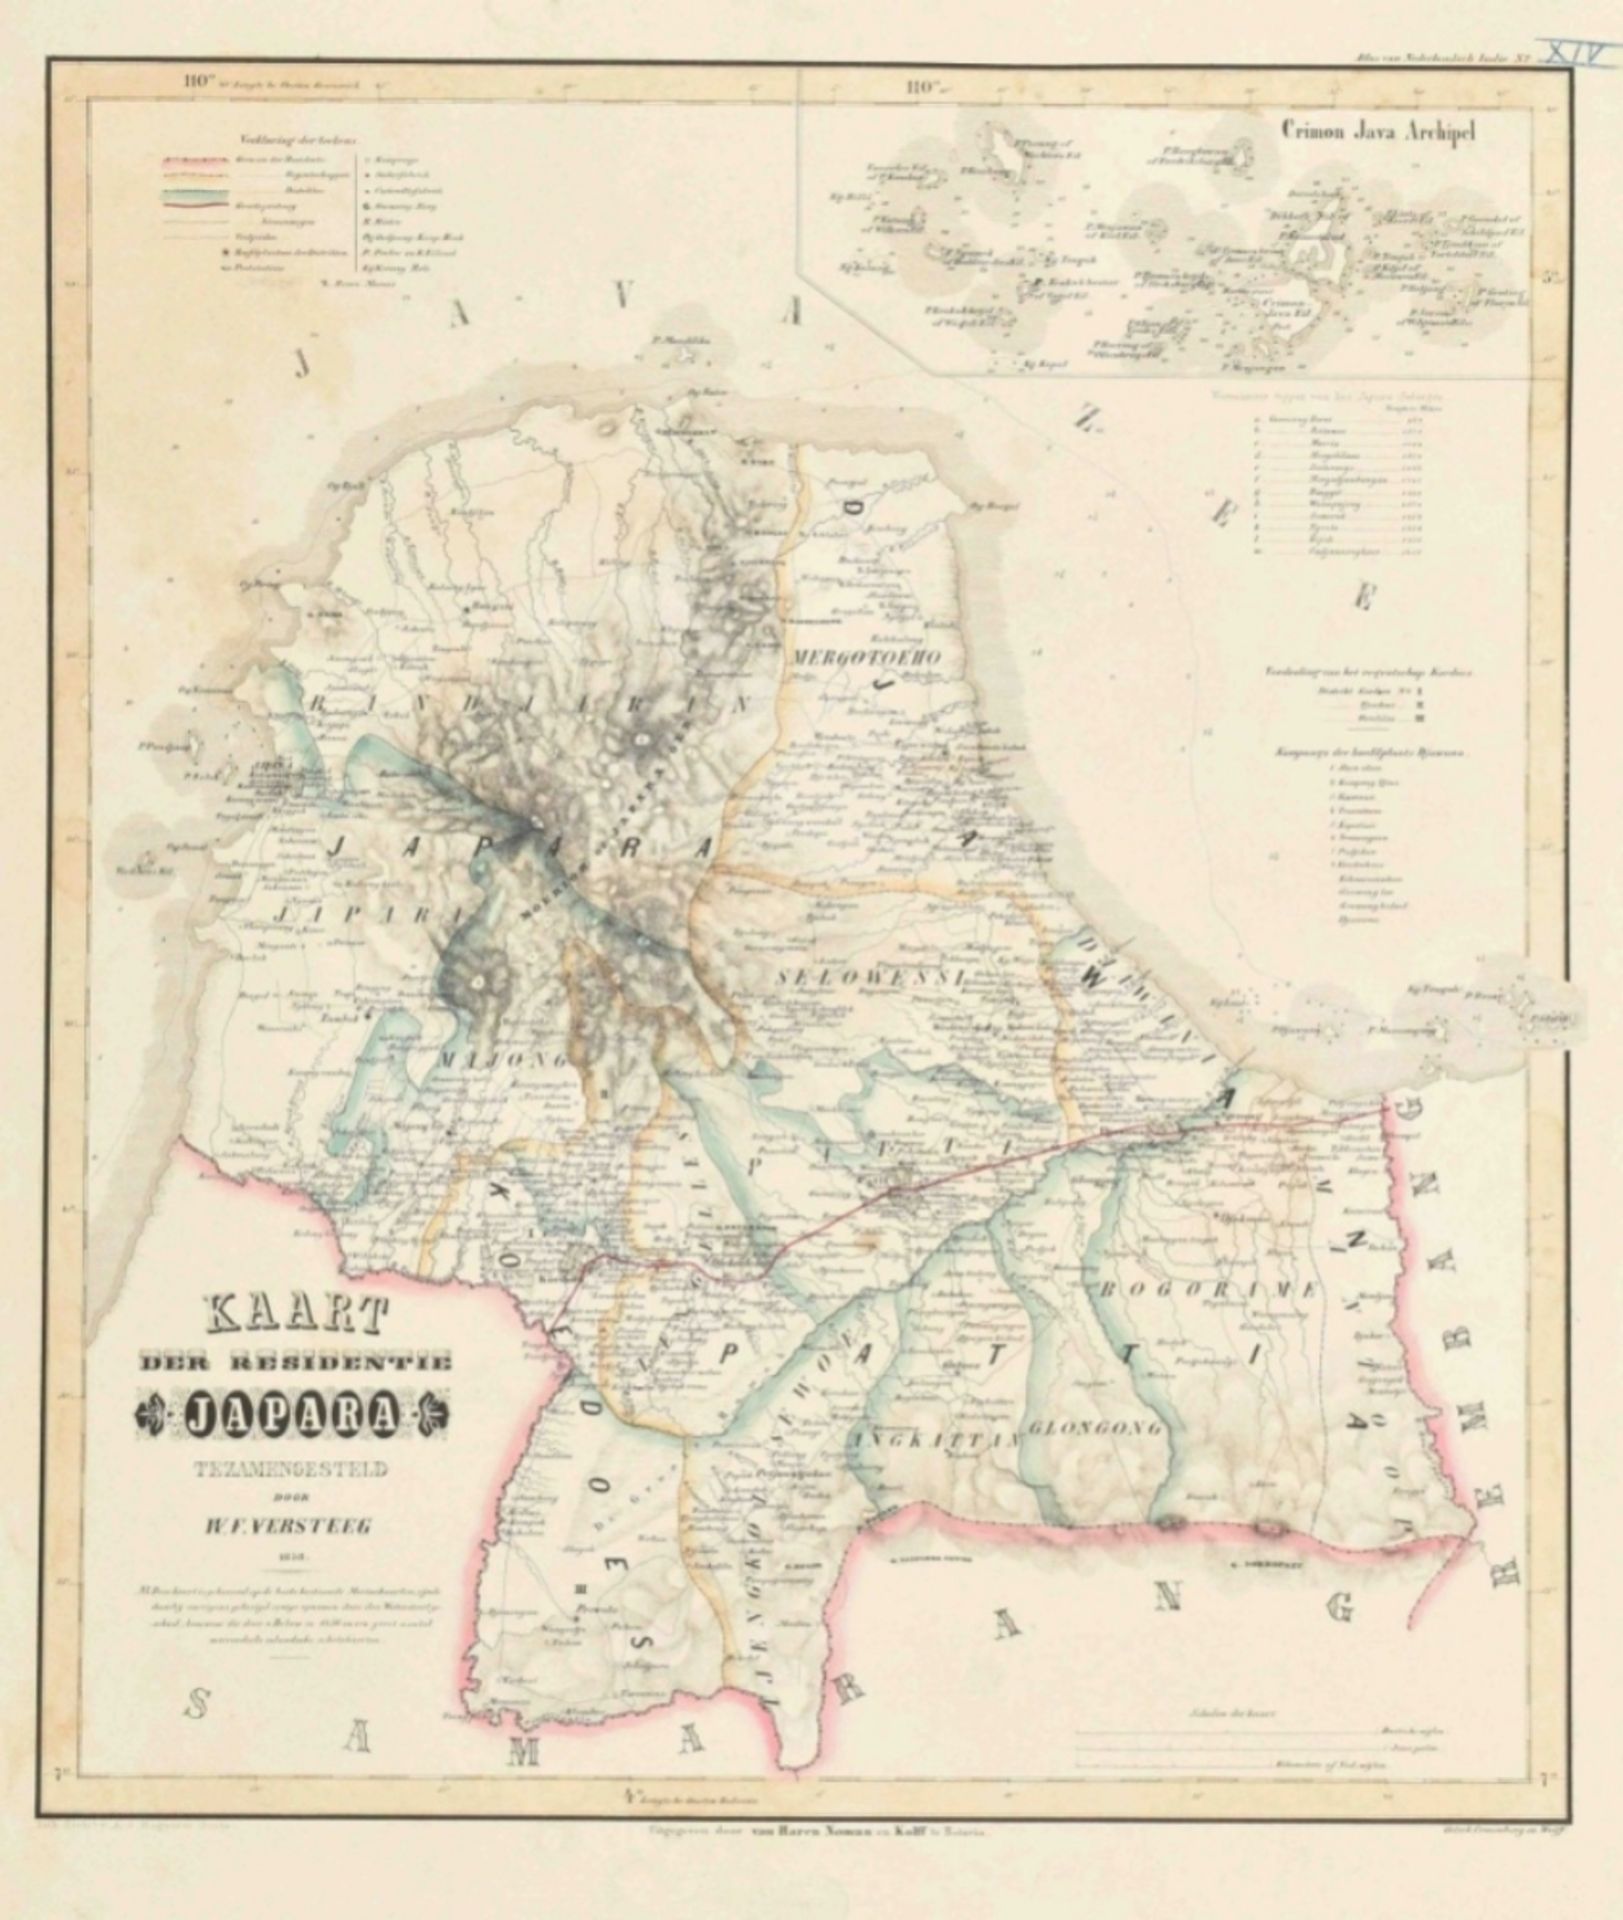 P. Melvill van Carnbée. W.F. Versteeg. Algemeene atlas van Nederlandsch Indië - Image 8 of 10